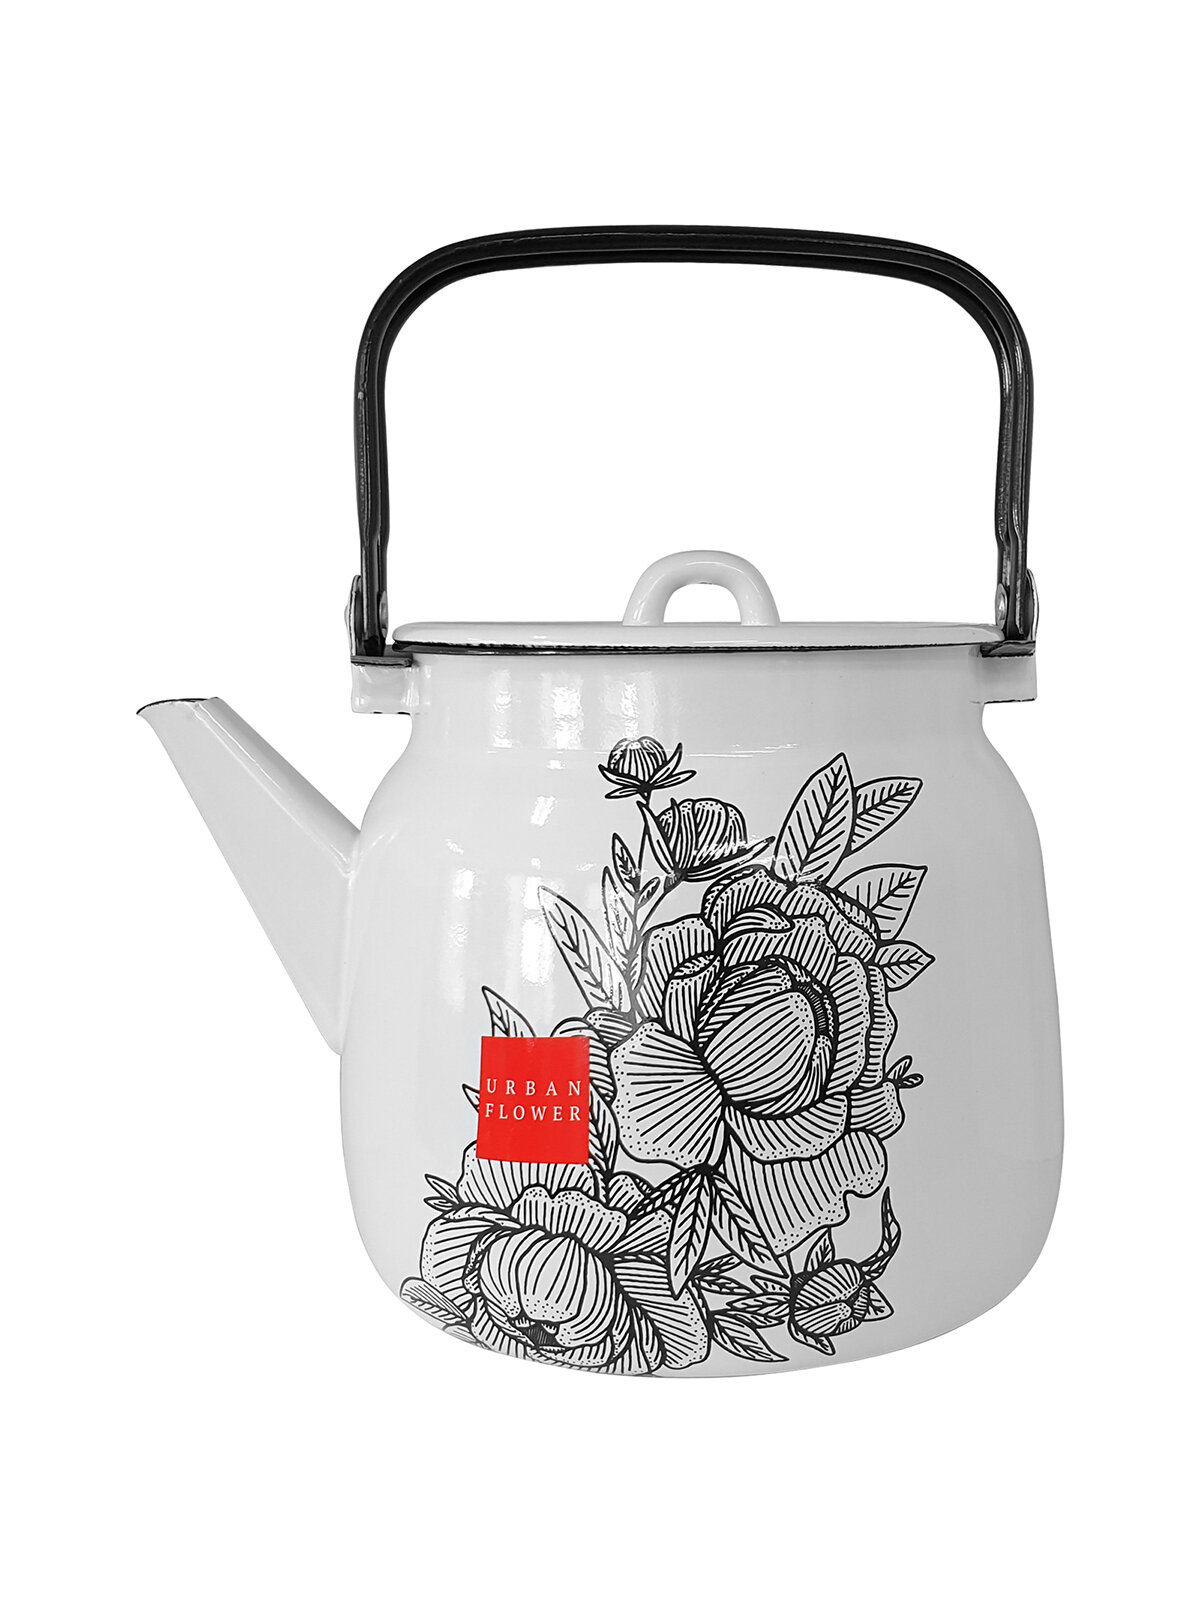 Чайник для плиты Лысьвенские эмали Urban flower эмалированный, 3,5 л